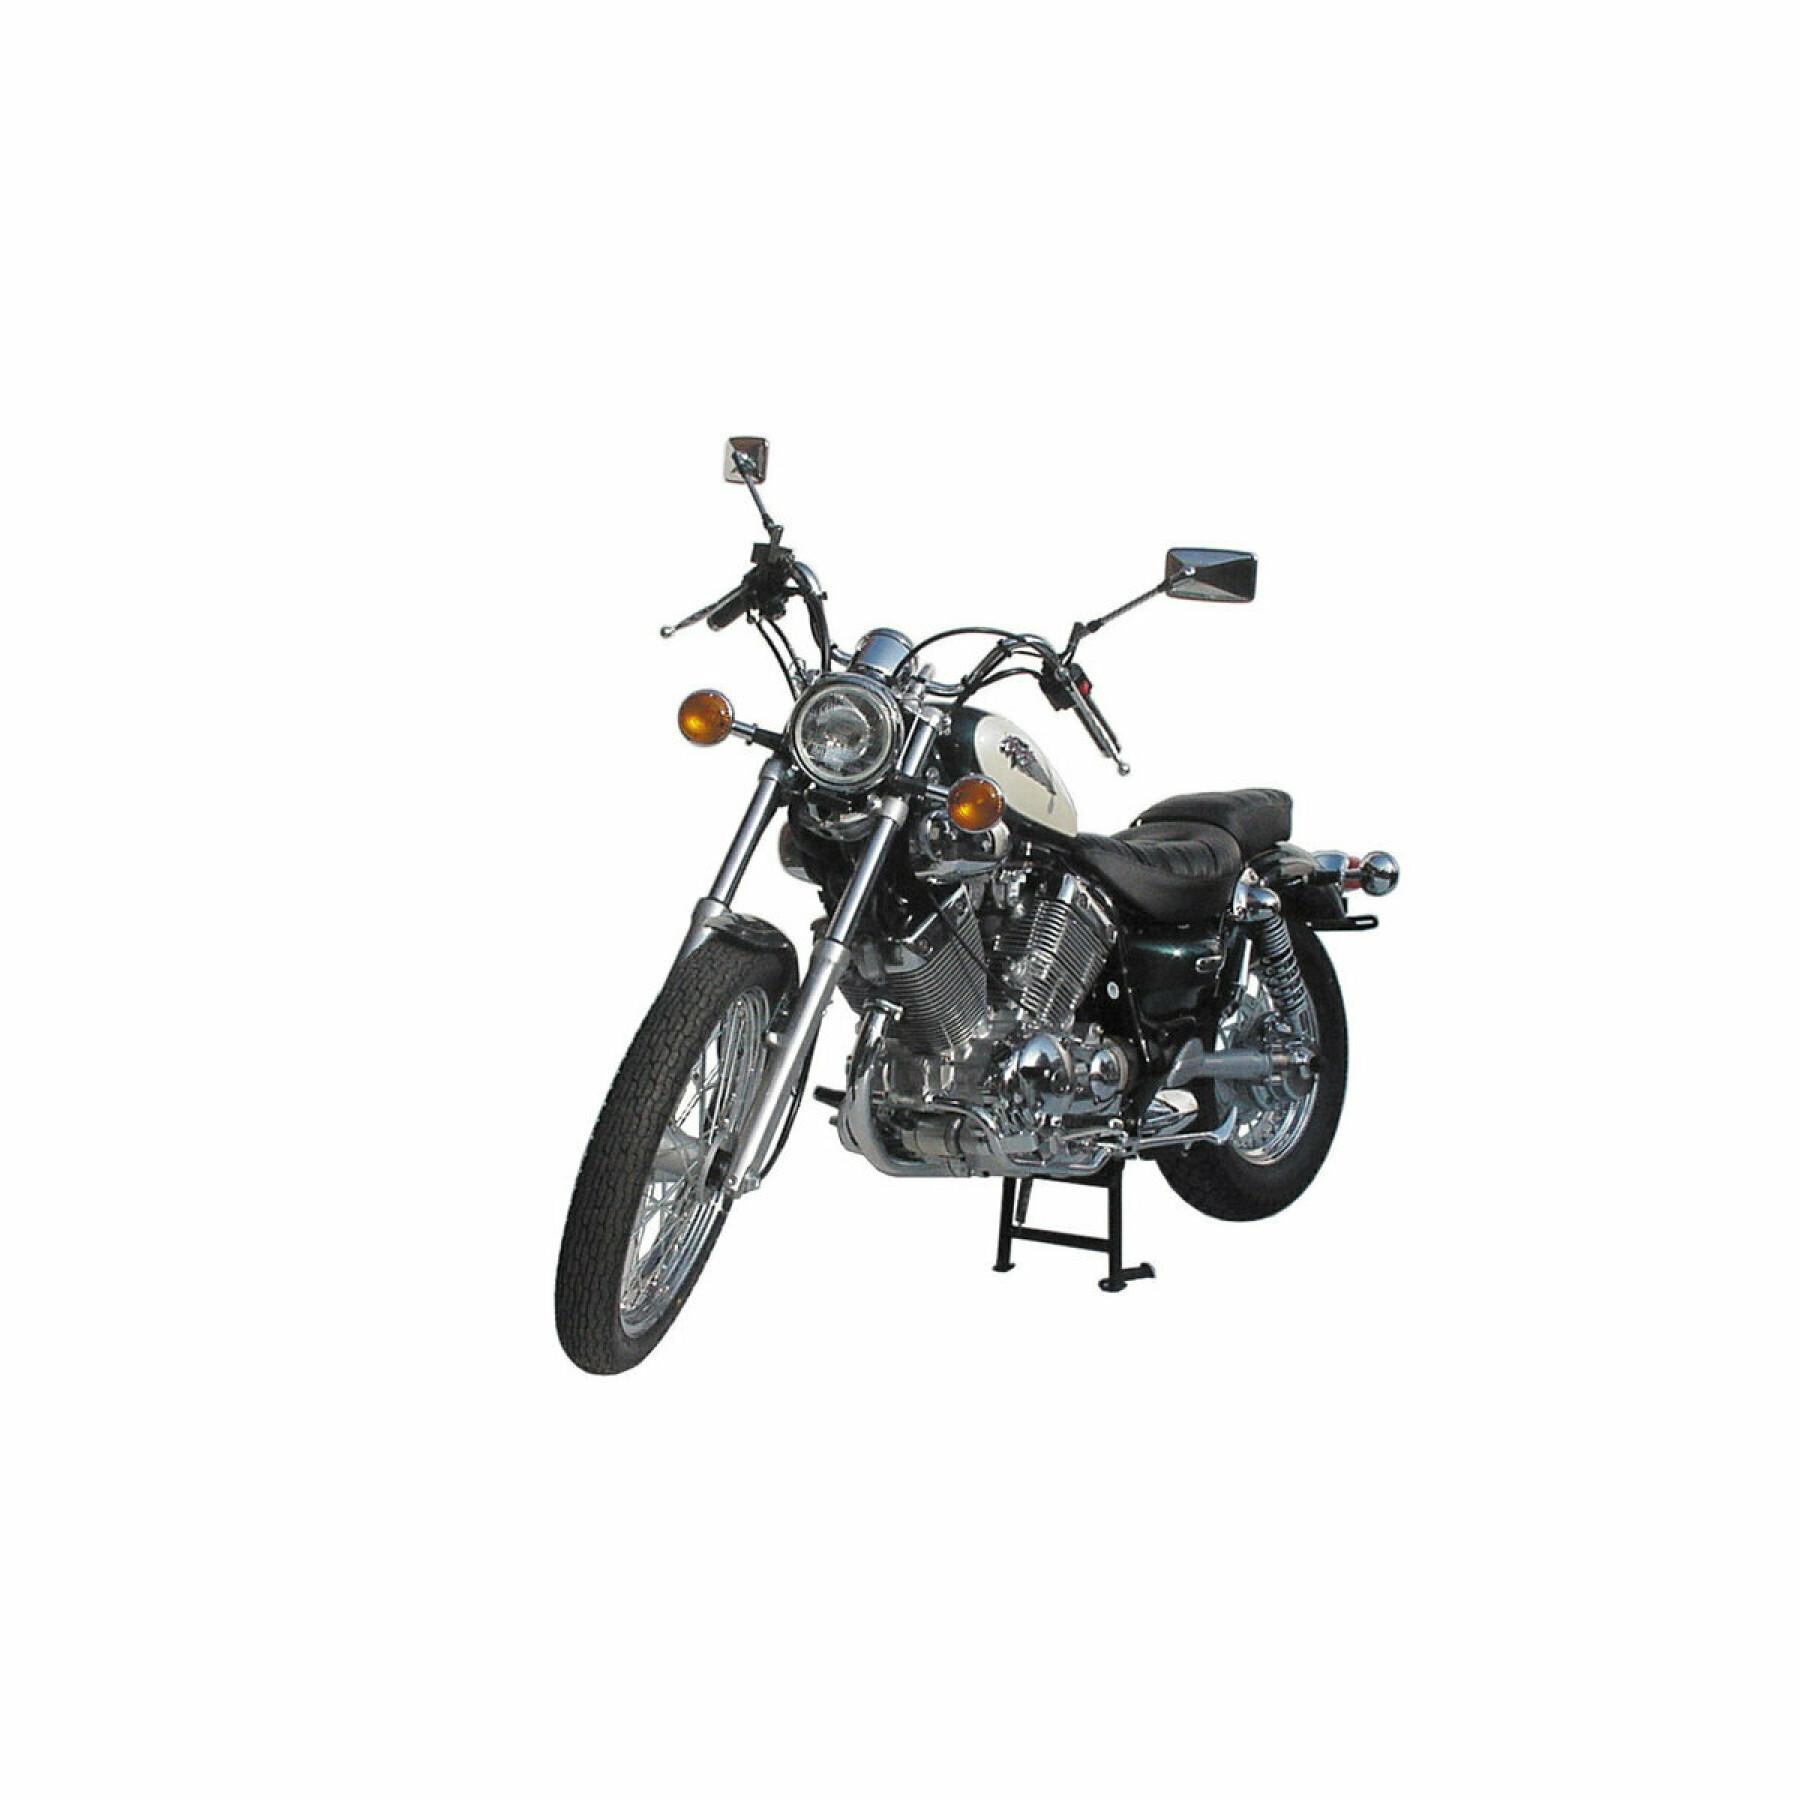 Stojak centralny do motocykli SW-Motech Yamaha XV 535 Virago (87-98)